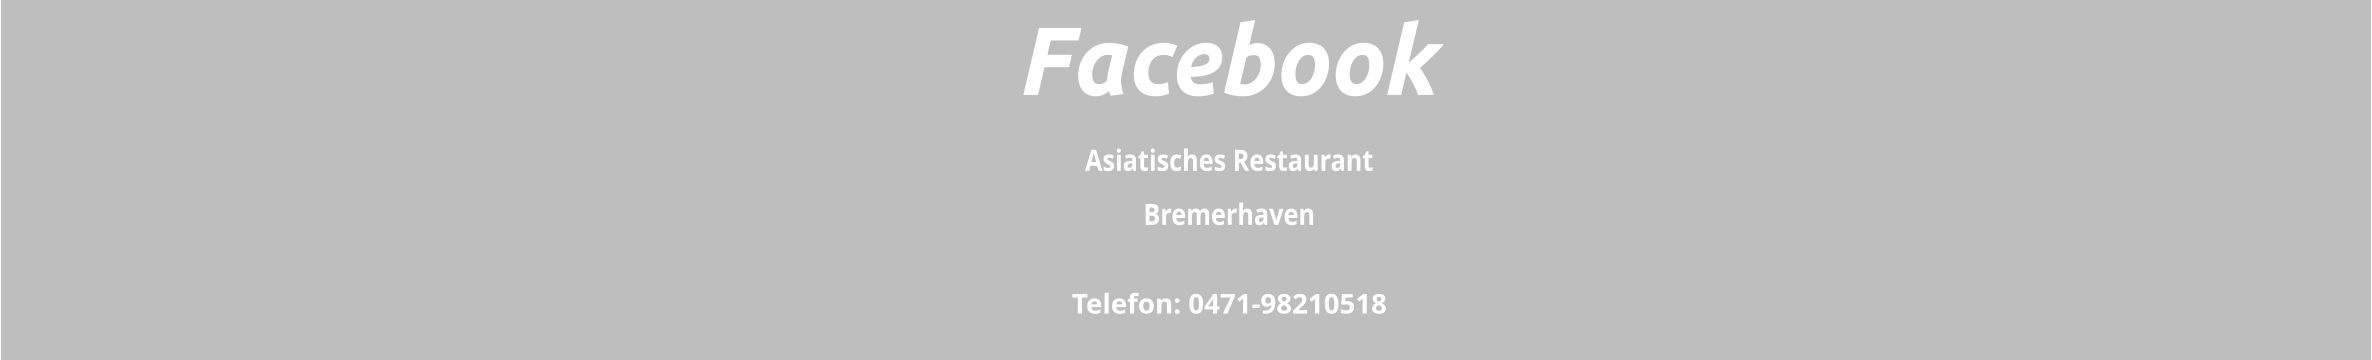 Asiatisches Restaurant  Bremerhaven Telefon: 0471-98210518 Facebook